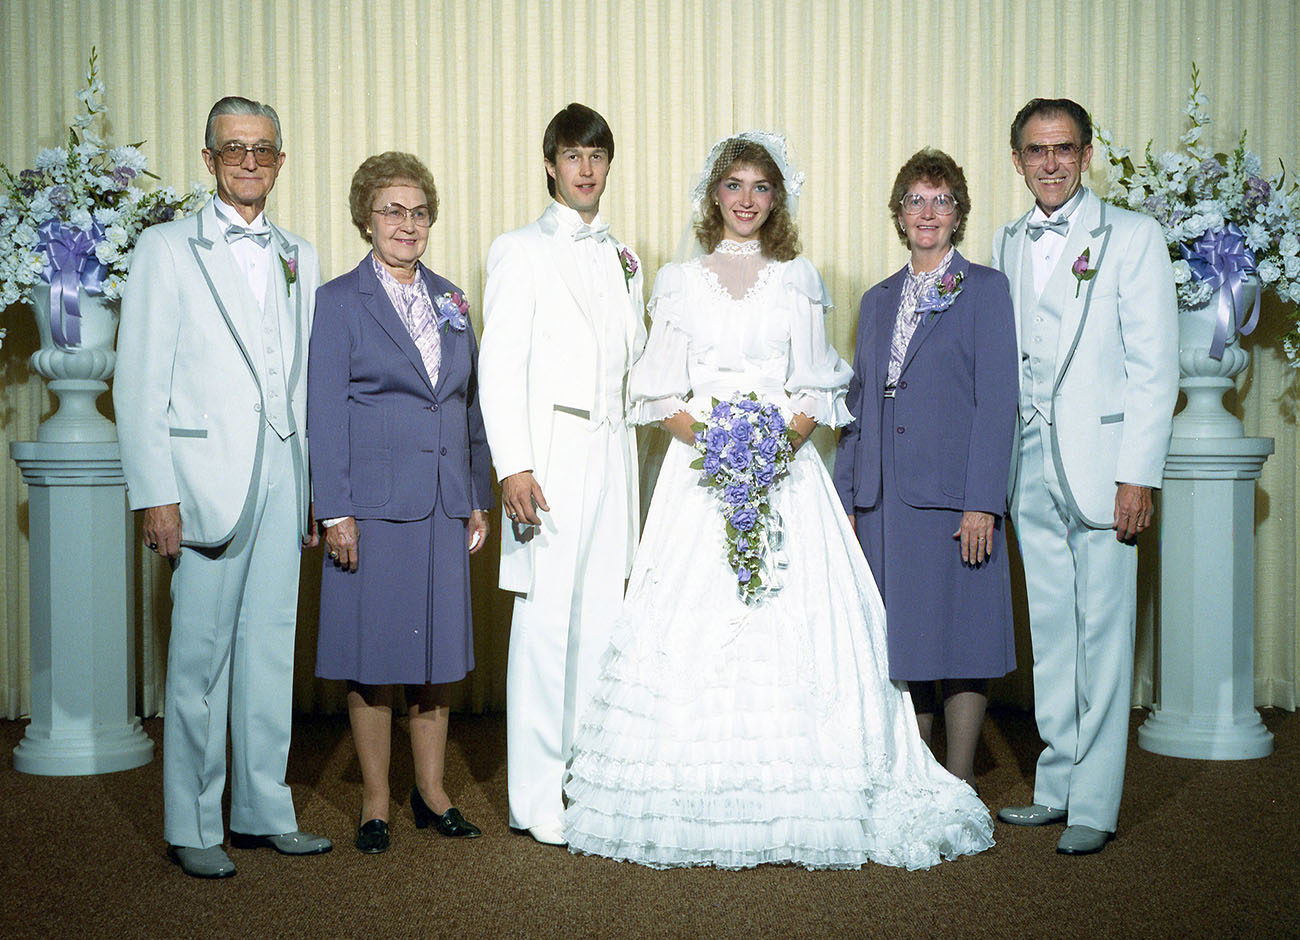 family in wedding attire